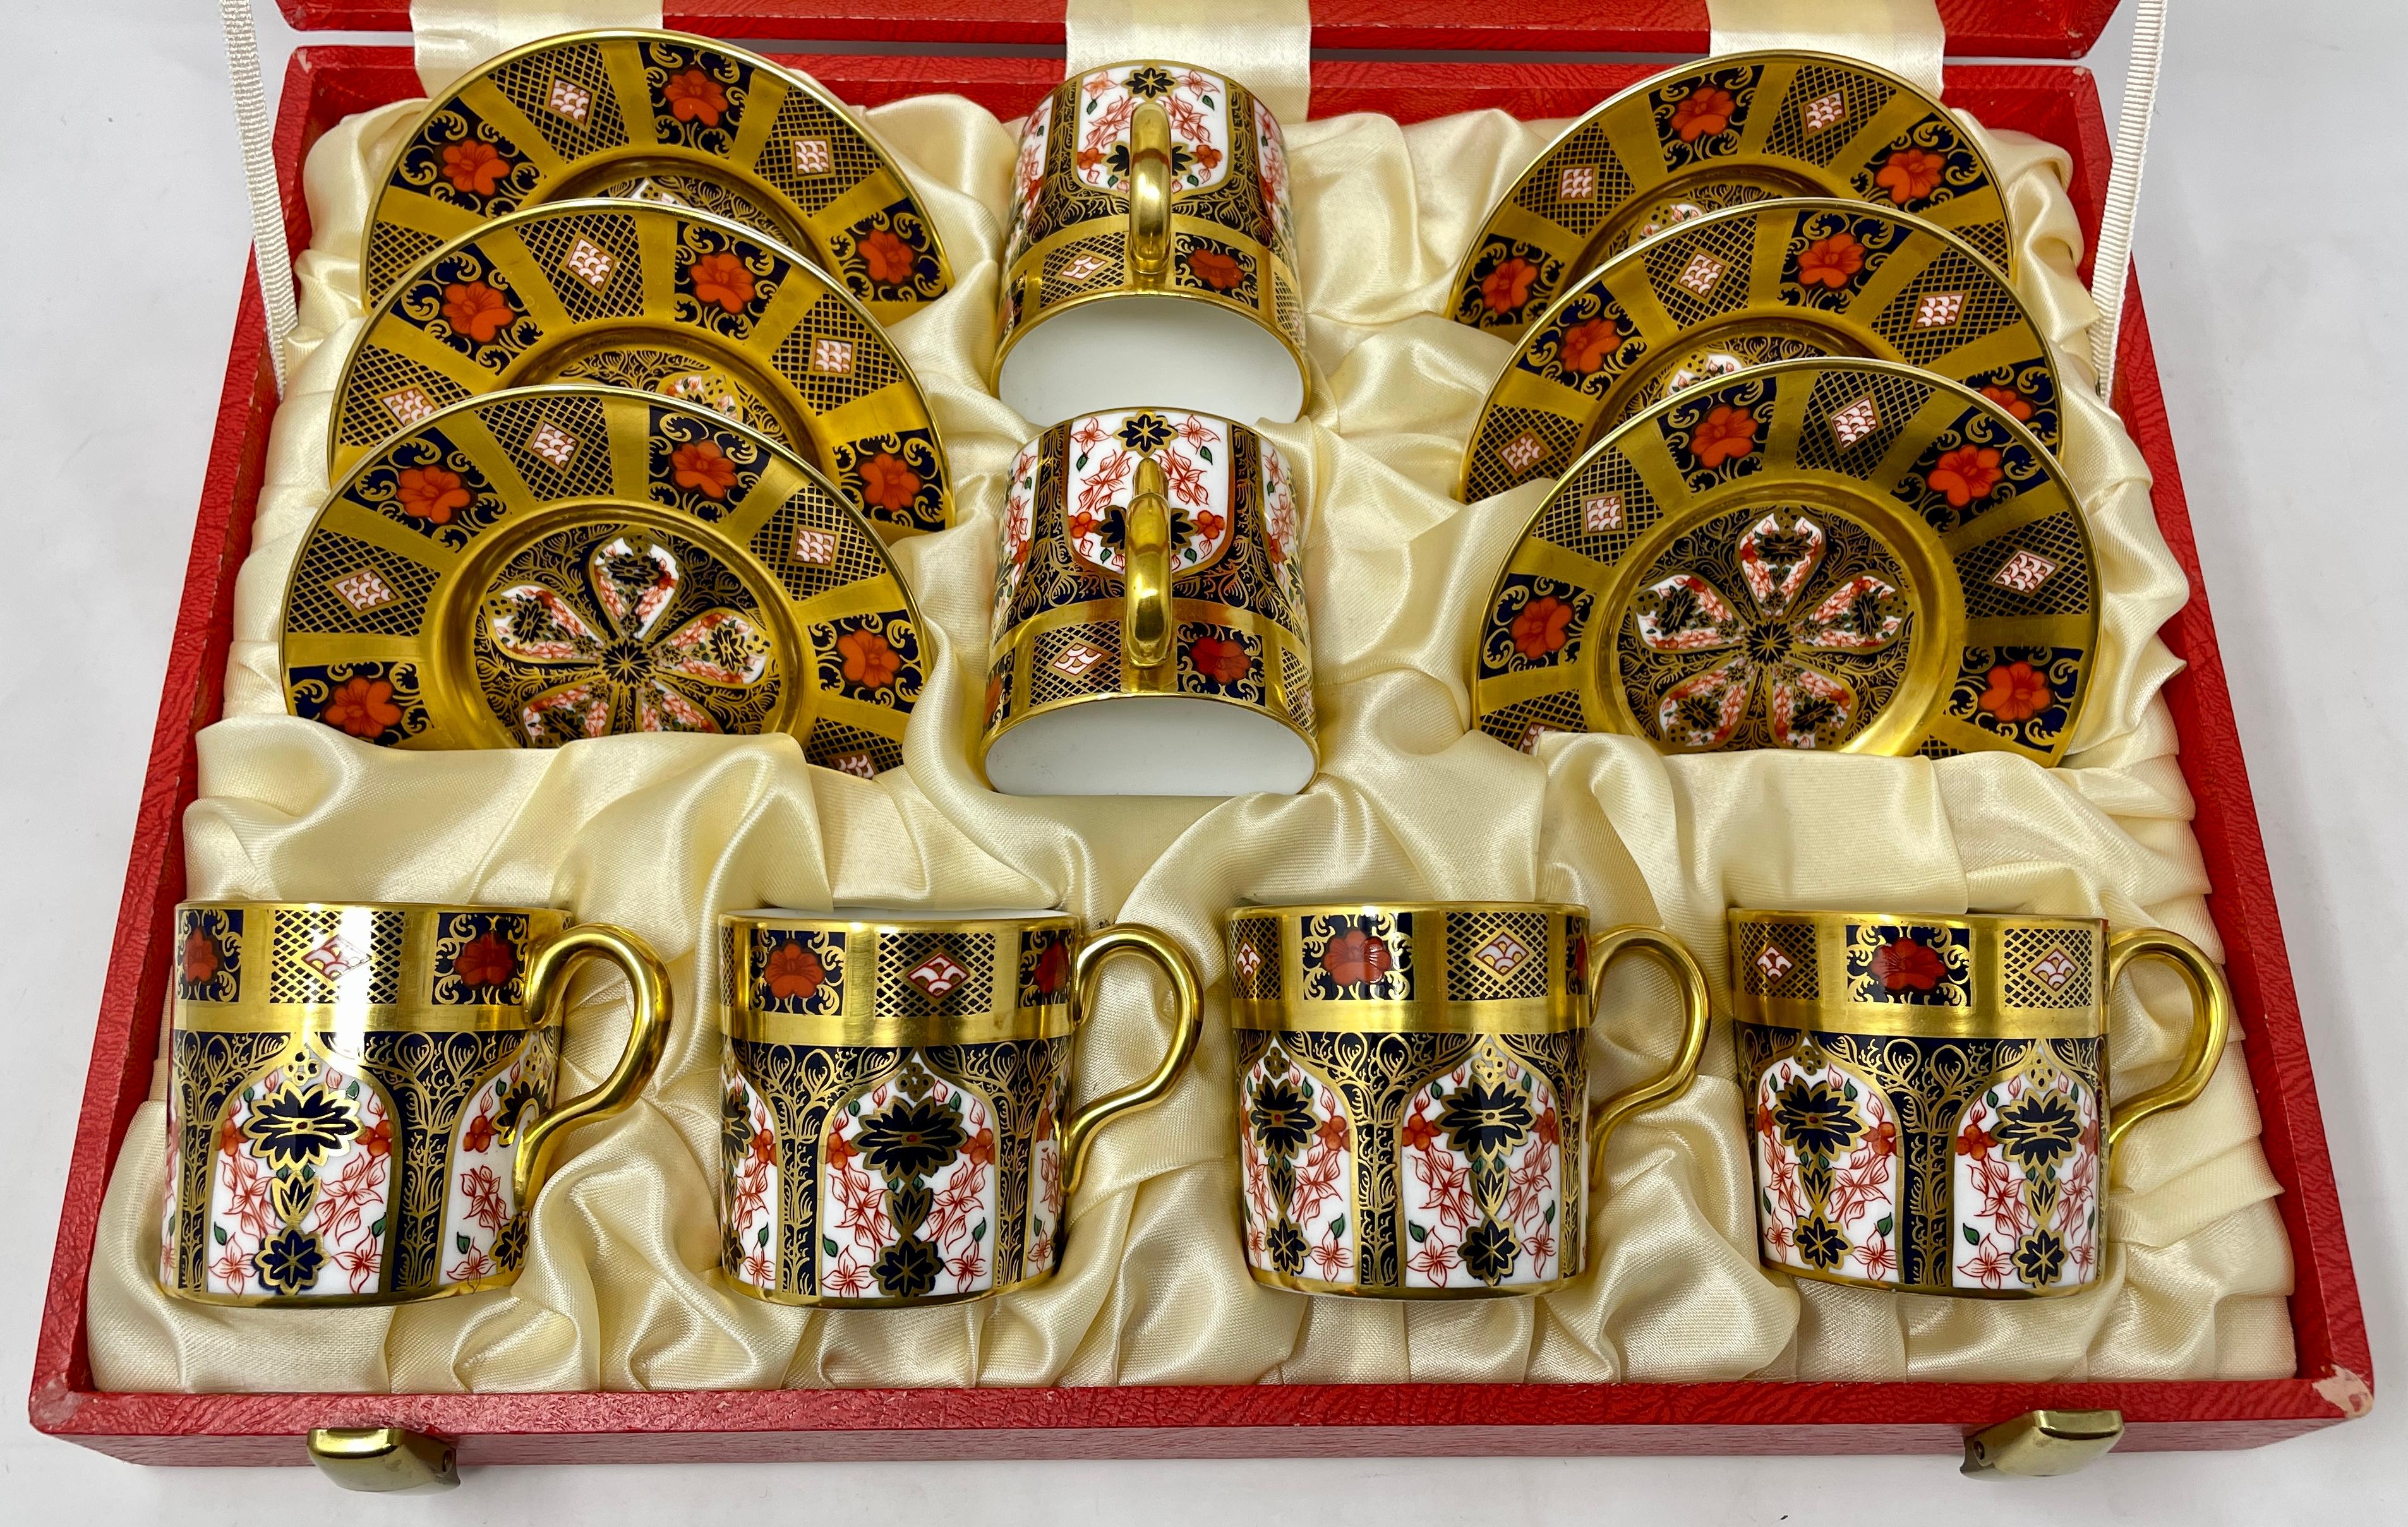 Satz von 6 Estate English Royal Crown Derby Porcelain Demitasse Tassen und Untertassen. 
Tassen: Höhe - 2,5 Zoll, Durchmesser - 2,5 Zoll
Untertassen: Höhe - 1 Zoll, Durchmesser - 4,5 Zoll 